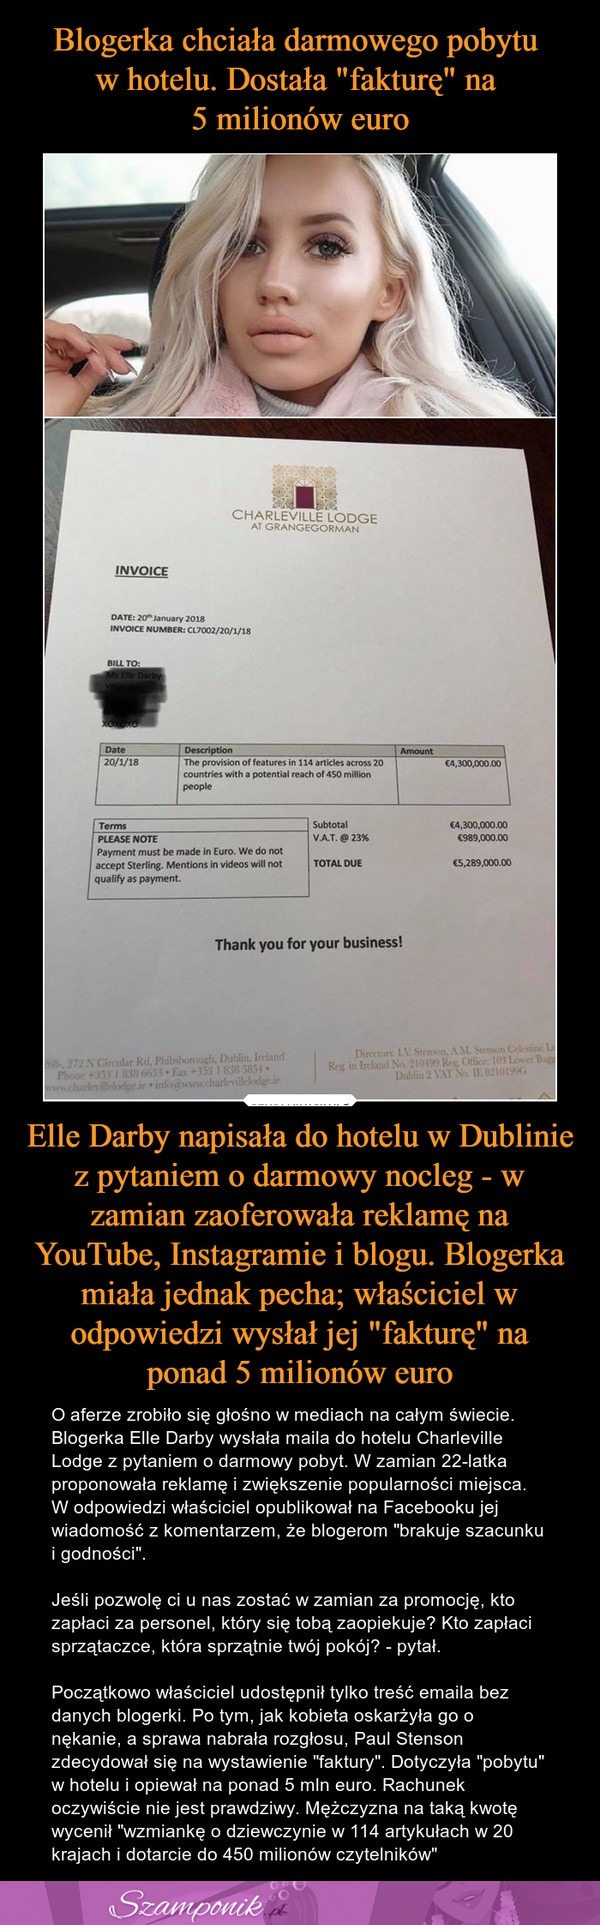 Blogerka chciała darmowego pobytu w hotelu. Dostała "fakturę" na 5 milionów euro!